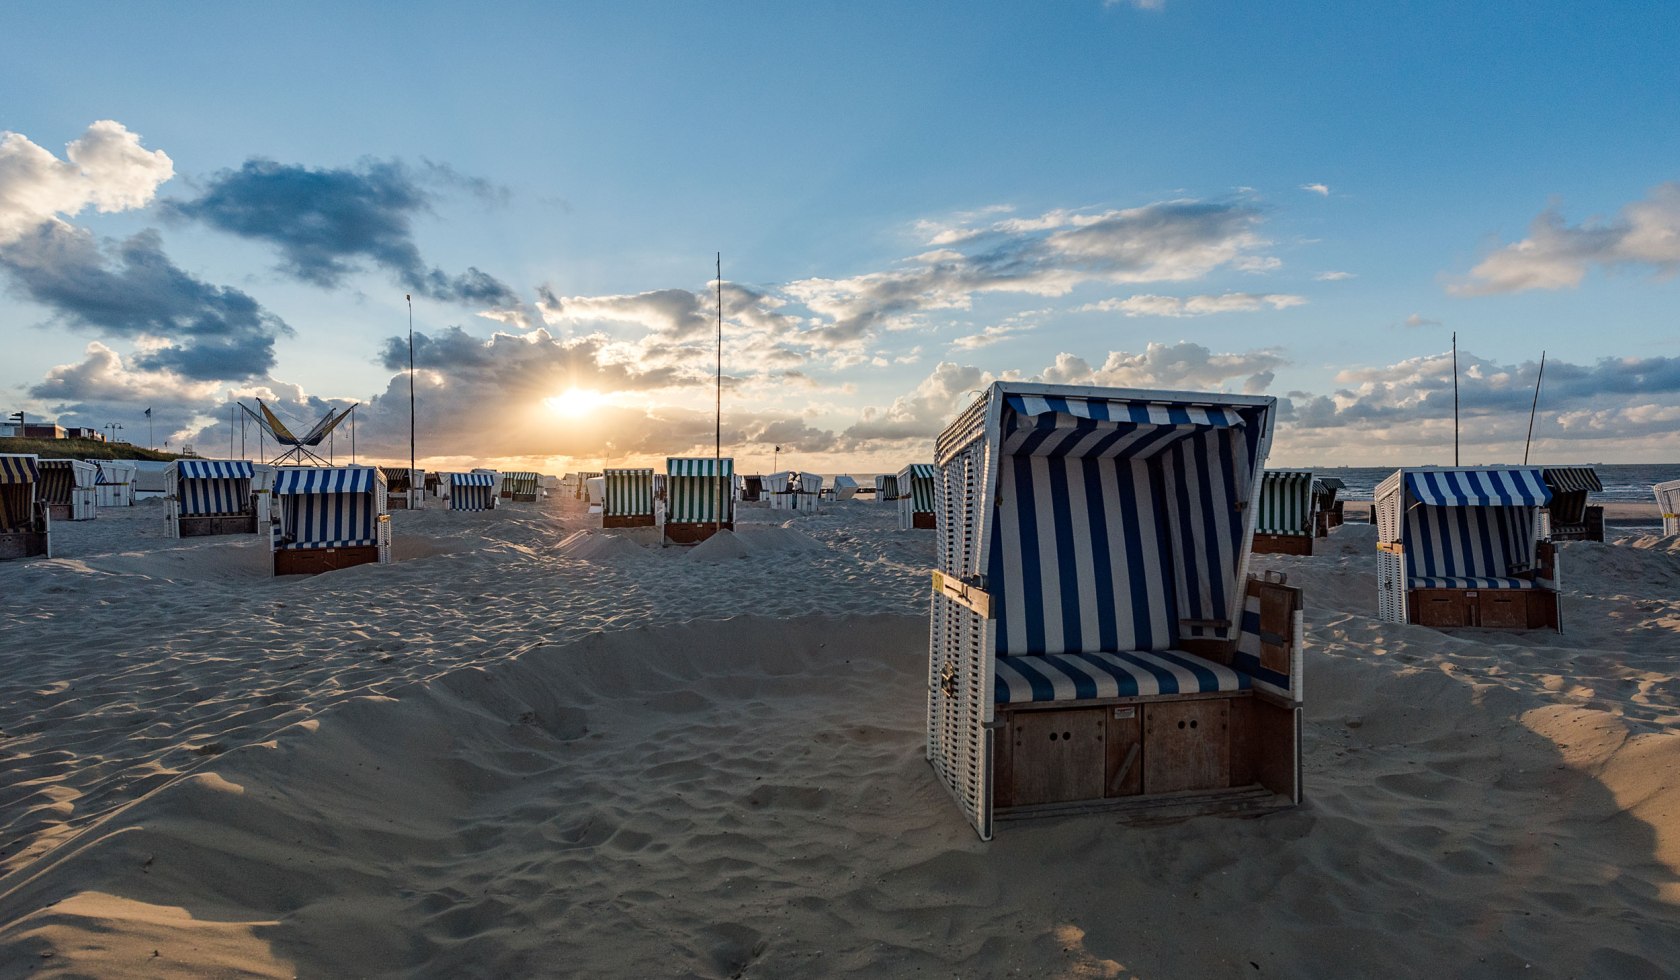 Strandkörber am Strand auf Wangerooge, © Kurverwaltung Wangerooge / Kees van Surksum